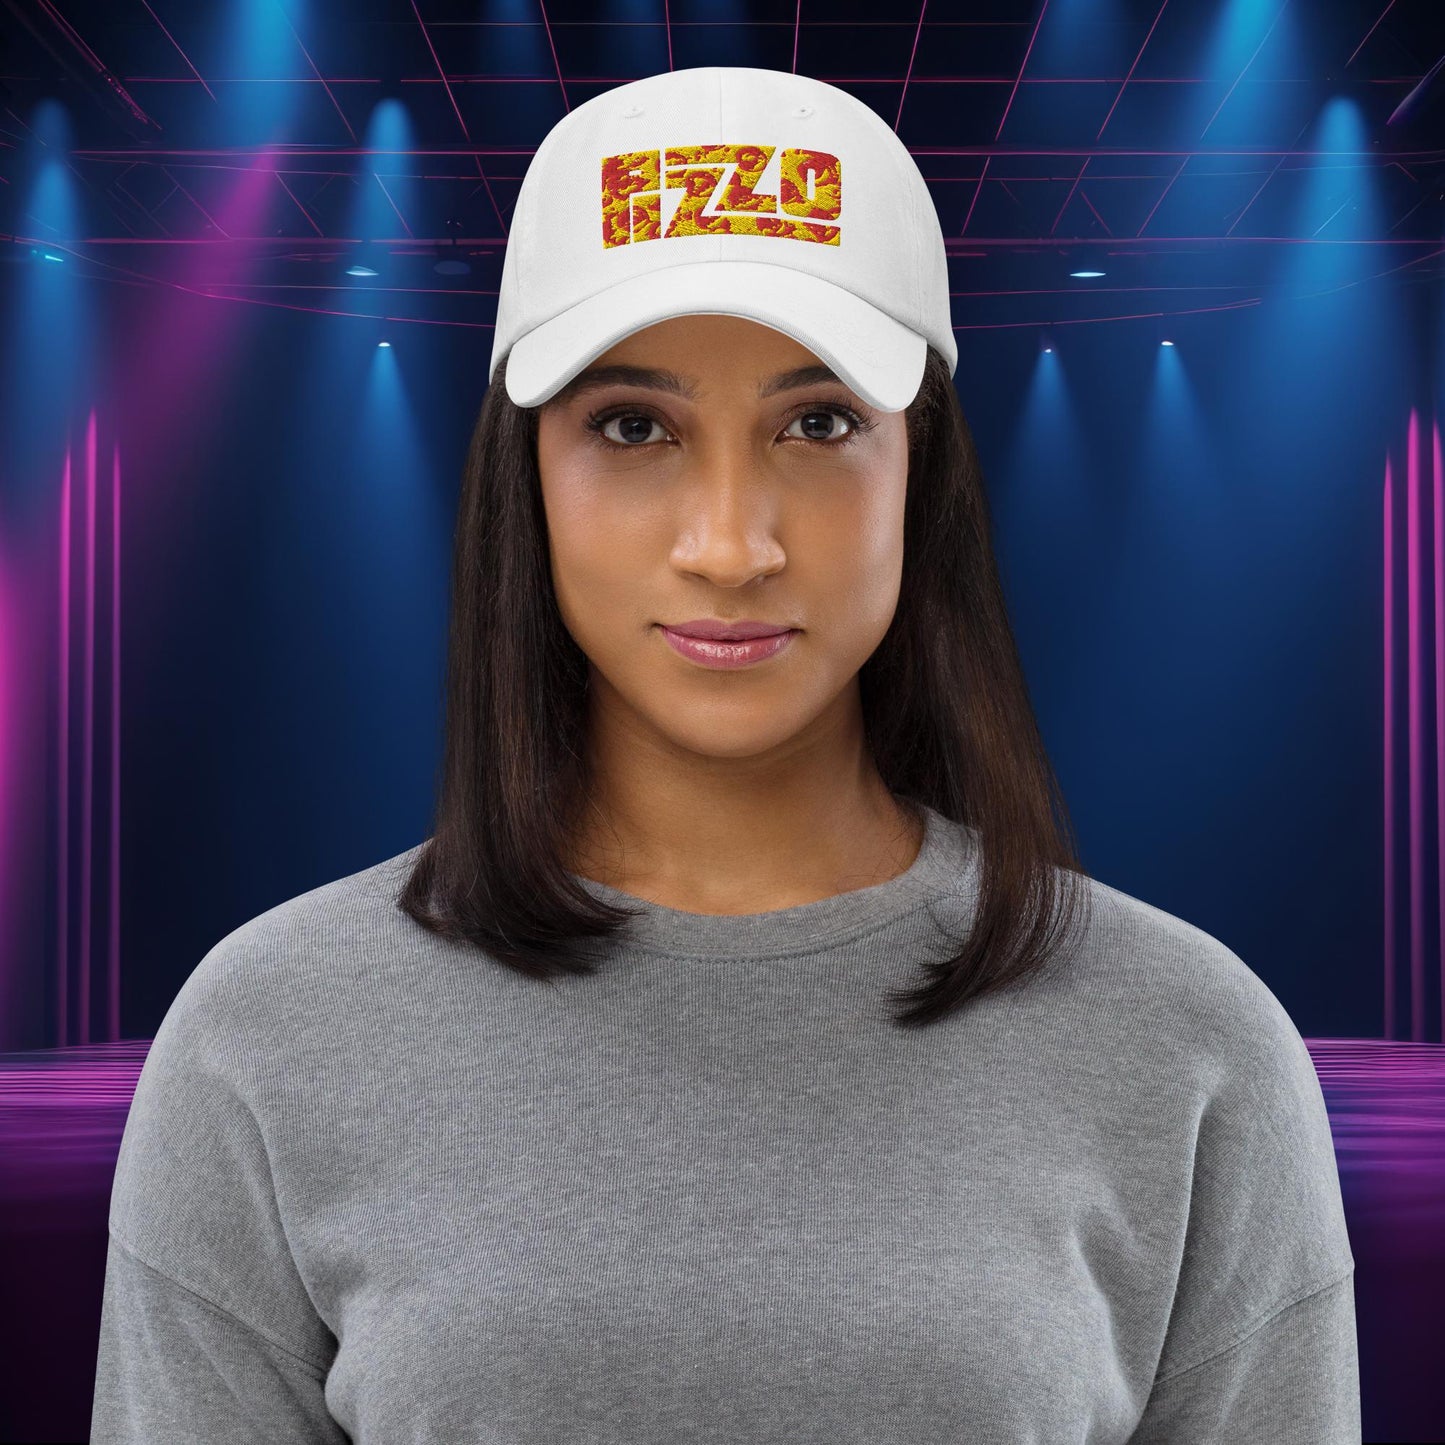 Pizzo Lizzo Pizza Lizzo Merch Lizzo Gift Song Lyrics Lizzo Dad hat Next Cult Brand